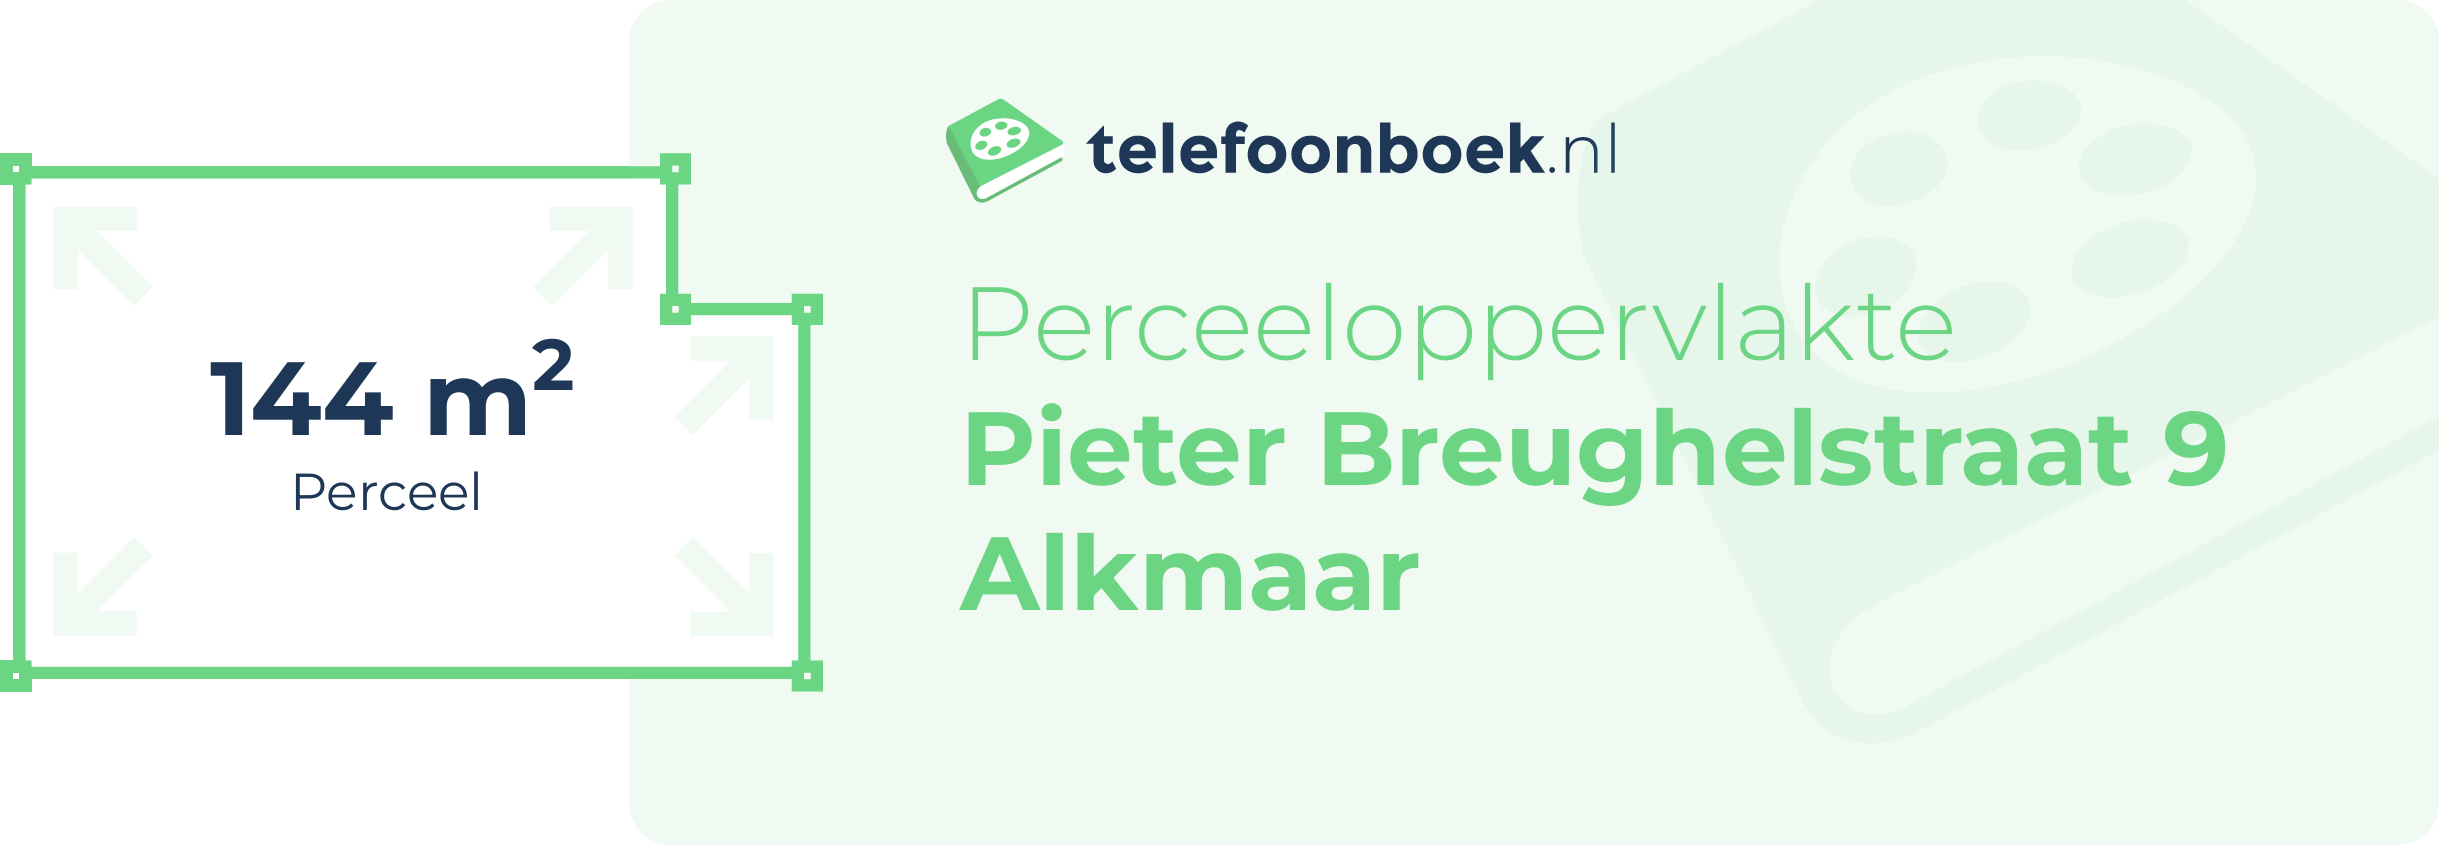 Perceeloppervlakte Pieter Breughelstraat 9 Alkmaar